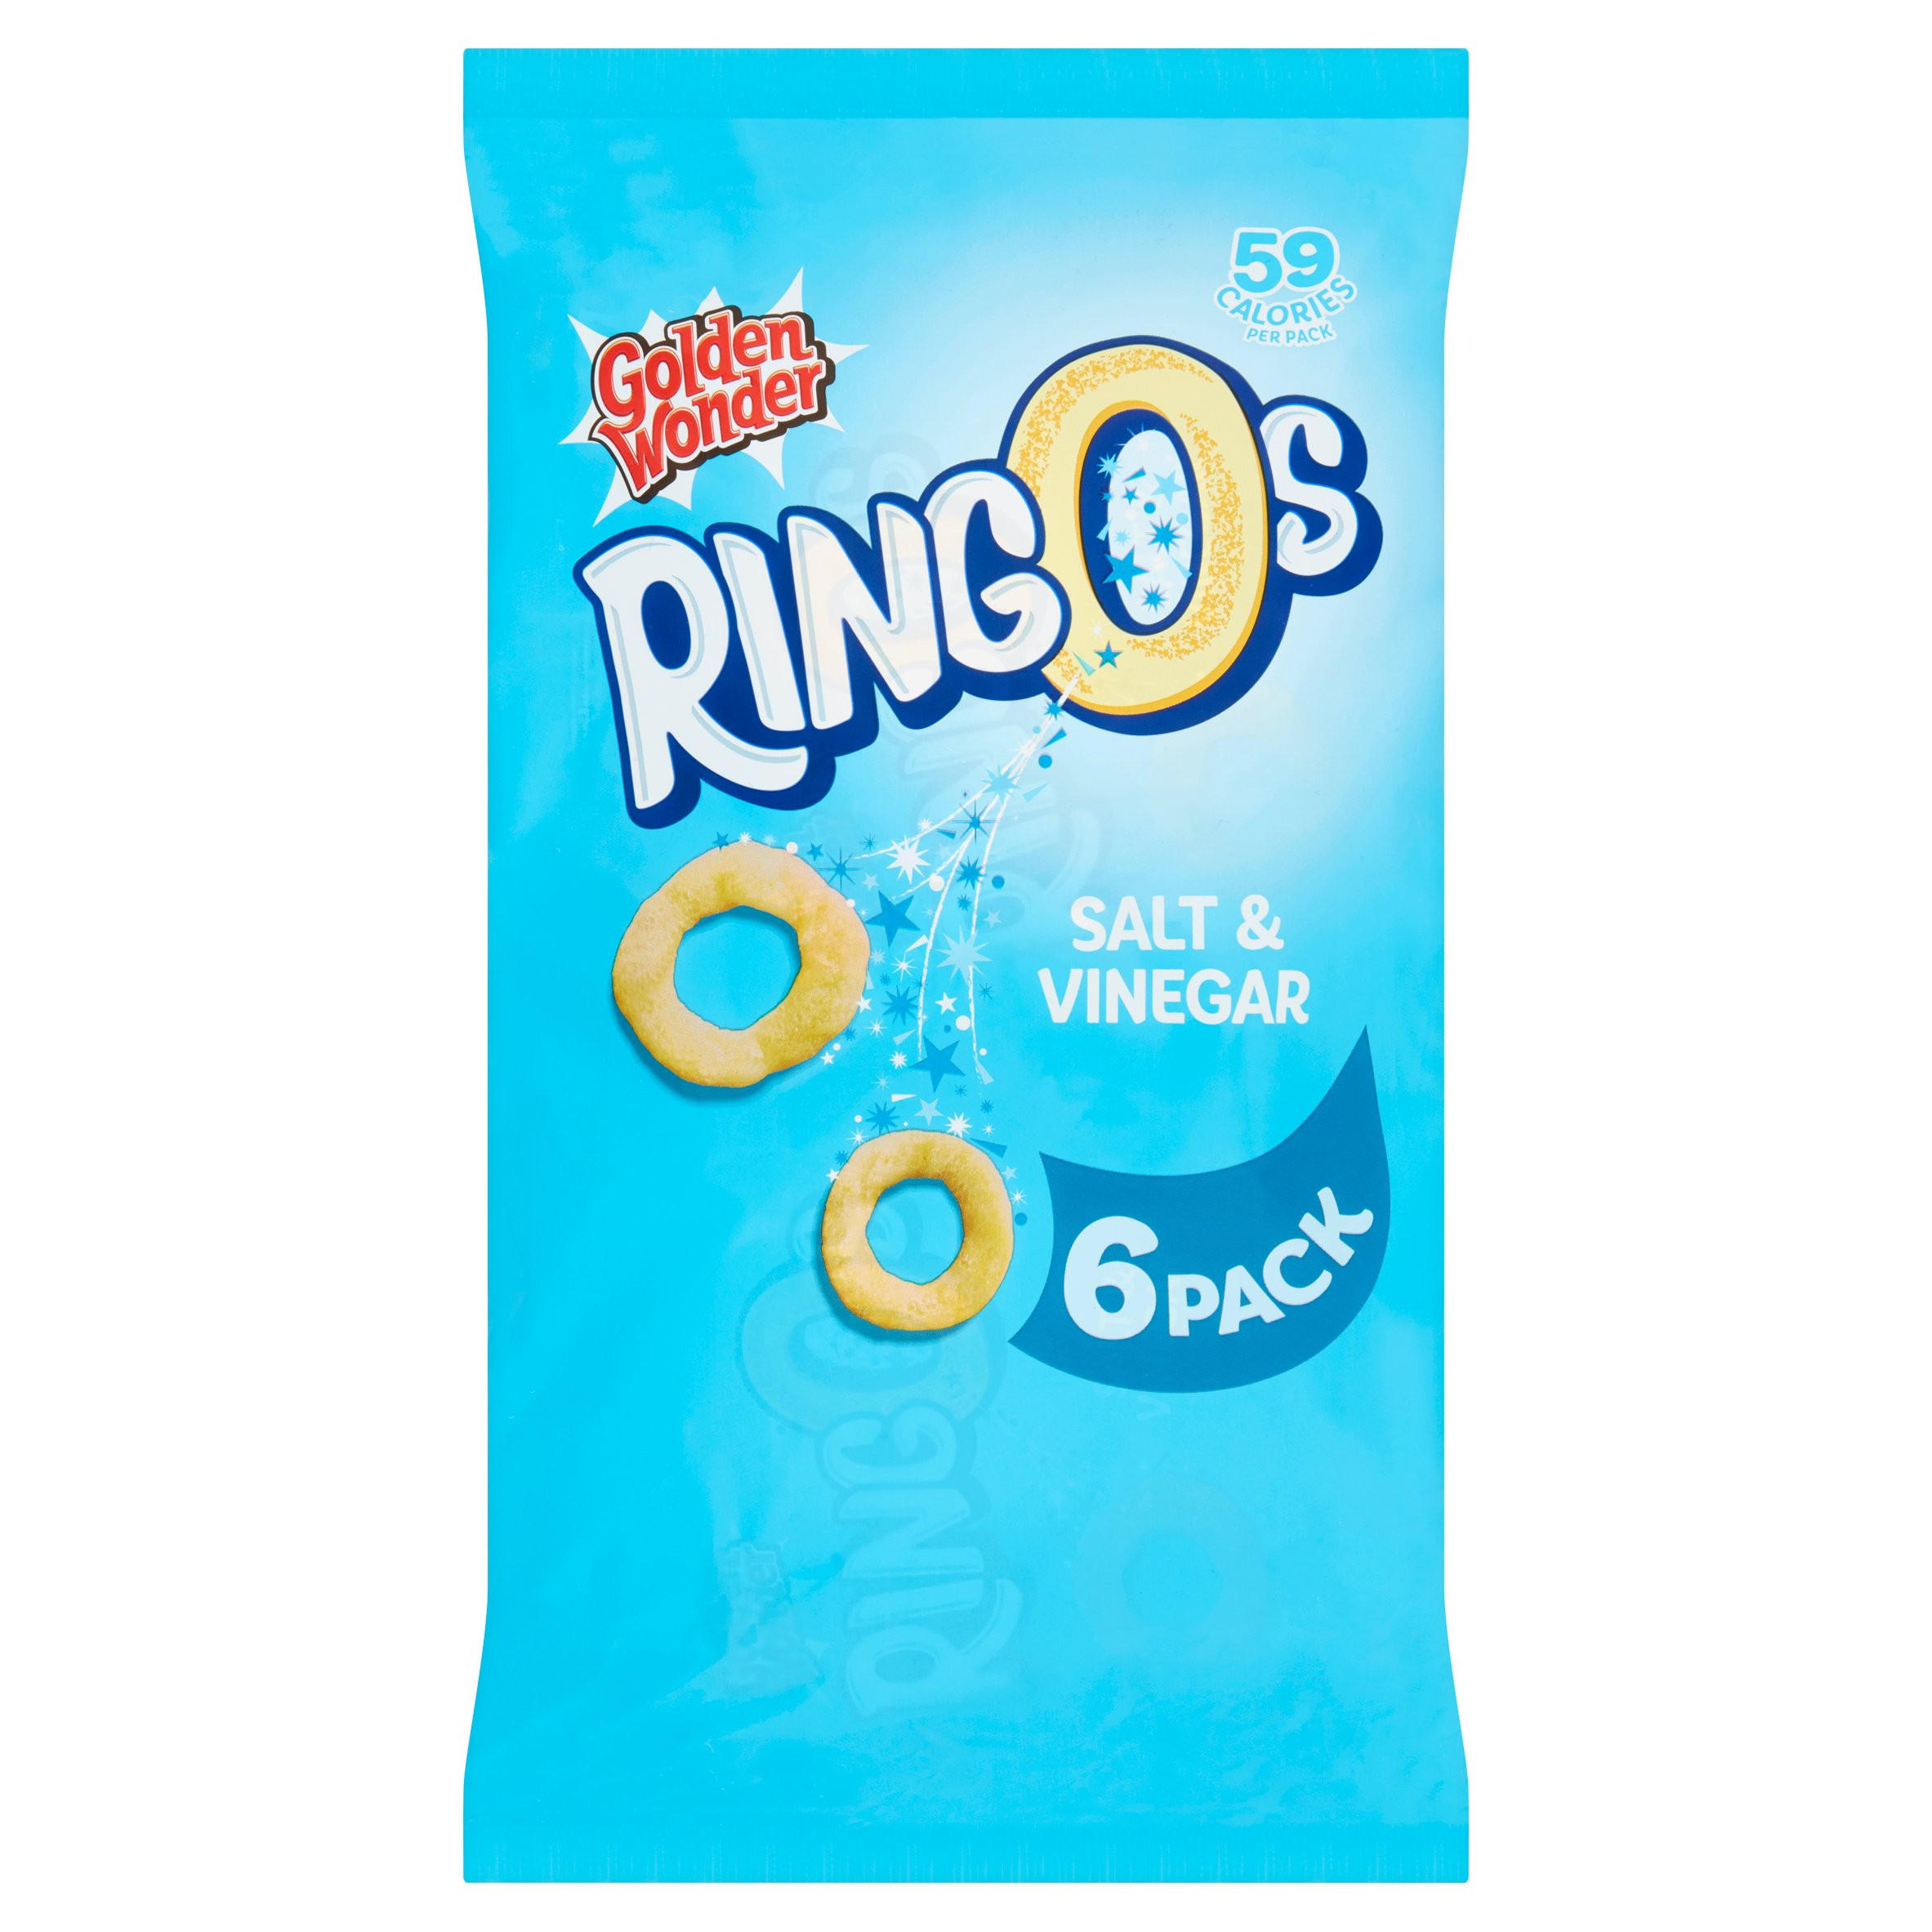 Golden Wonder Ringos Salt & Vinegar 6 x 12.5g (75g) | Multipack Crisps ...